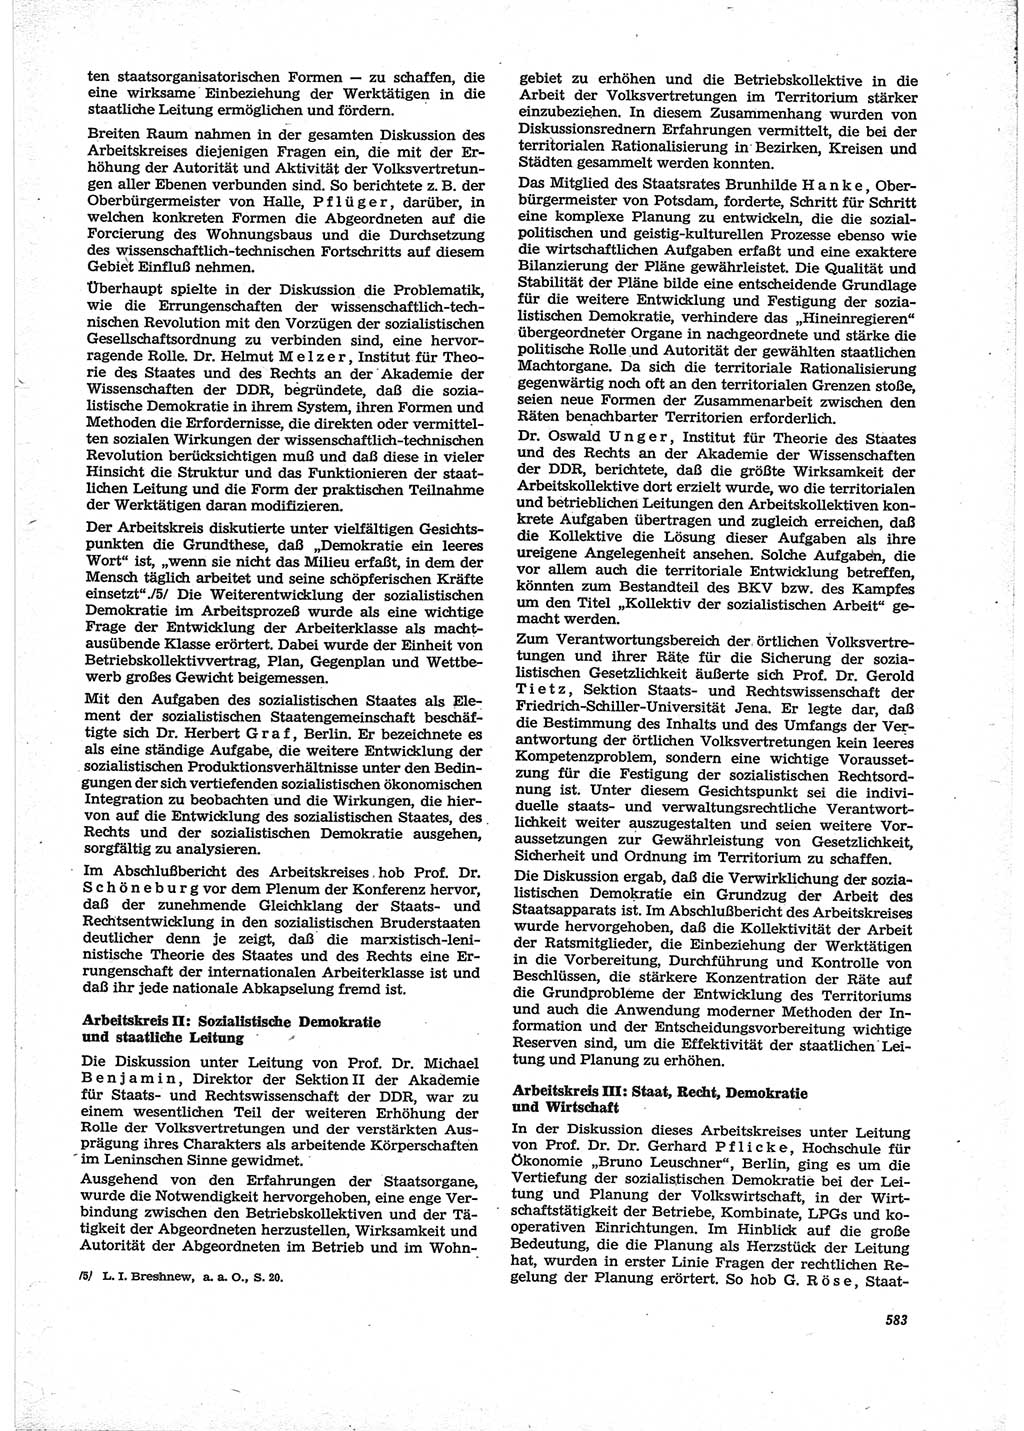 Neue Justiz (NJ), Zeitschrift für Recht und Rechtswissenschaft [Deutsche Demokratische Republik (DDR)], 28. Jahrgang 1974, Seite 583 (NJ DDR 1974, S. 583)